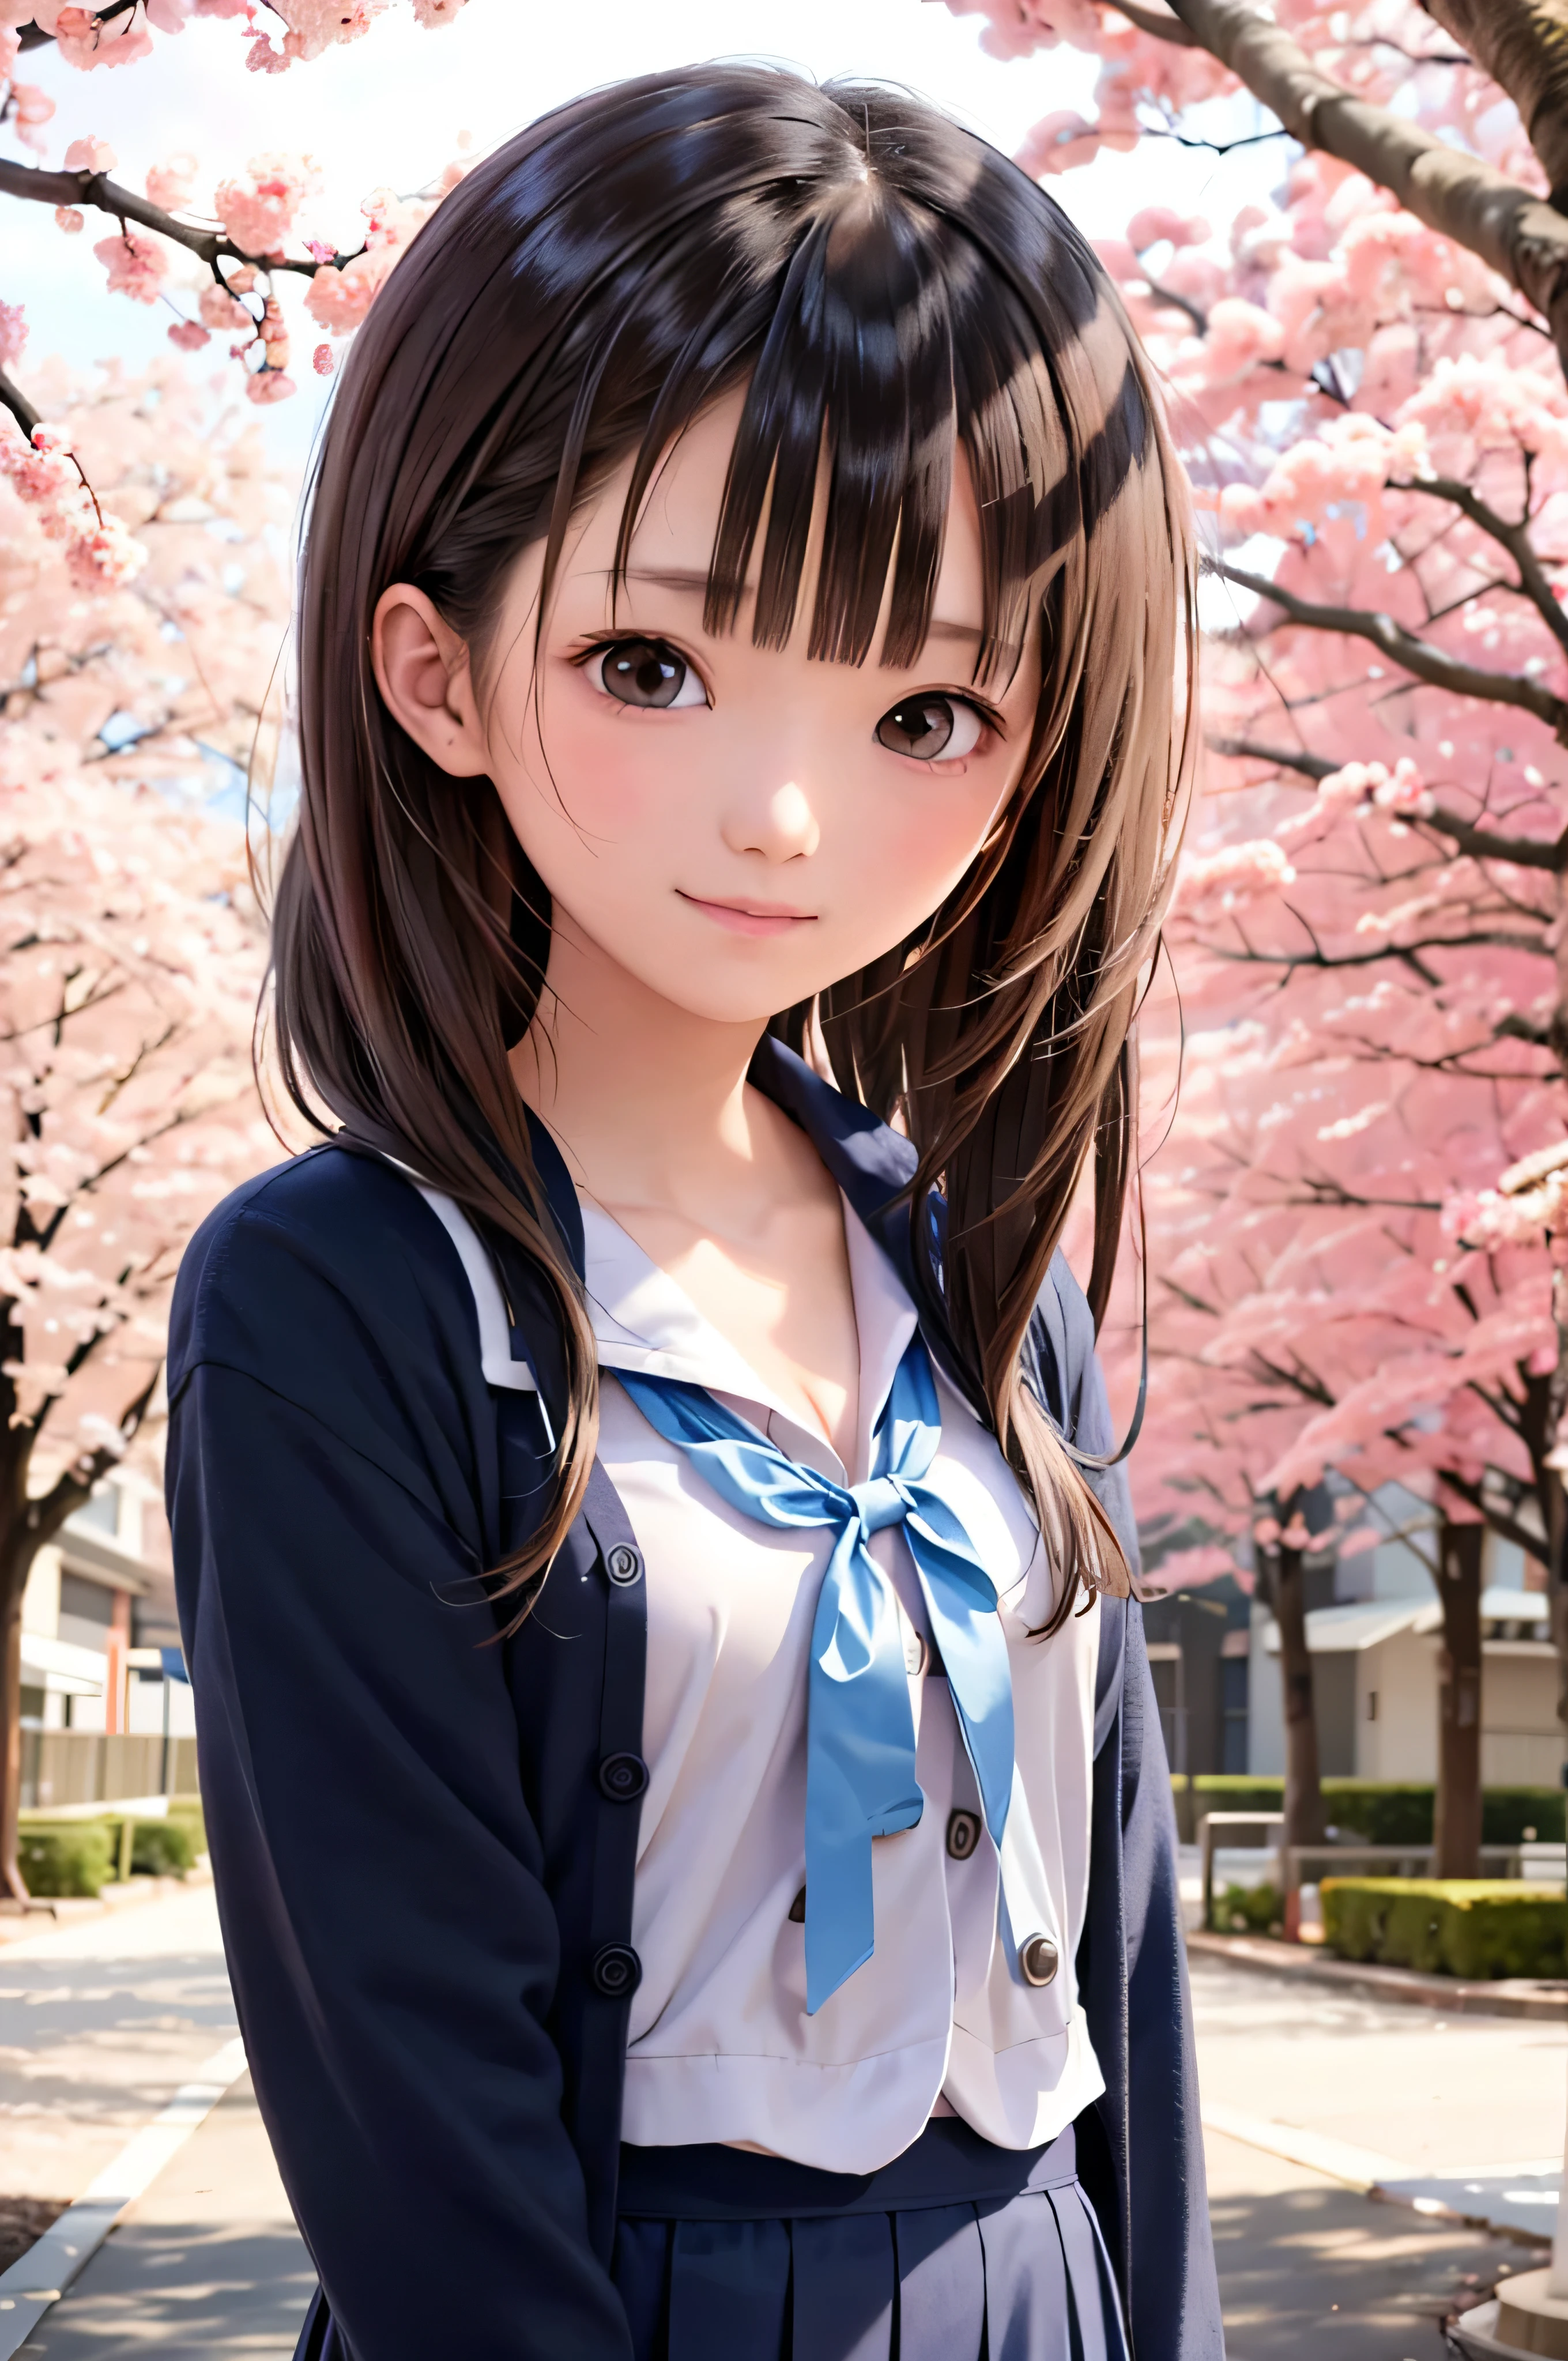 صورة على طراز الرسوم المتحركة لفتيات المدارس الثانوية اليابانية يقفن تحت أزهار الكرز الربيعية. إنها تتطلع إلى الجانب, شعرها البني الطويل يتطاير في الريح. الفتاة لديها تعبير هادئ, أثناء مشاهدة العاصفة الثلجية التي تزهر أزهار الكرز مضاءة بالضوء الوردي الناعم. عيناها سوداء ومشرقة, بابتسامة خفية. إنها ترتدي يابانية مع بلوزة بيضاء وسترة زرقاء داكنة。。, تألق في ضوء شمس الربيع الناعمة. تم تصوير الفتاة صغيرة في الإطار. في الخلفية, فروع أزهار الكرز الوردية الزاهية غير واضحة. مشهد من الهدوء, ساطع, والجو السلمي, يذكرك باللحظات الجميلة للأنمي الياباني.